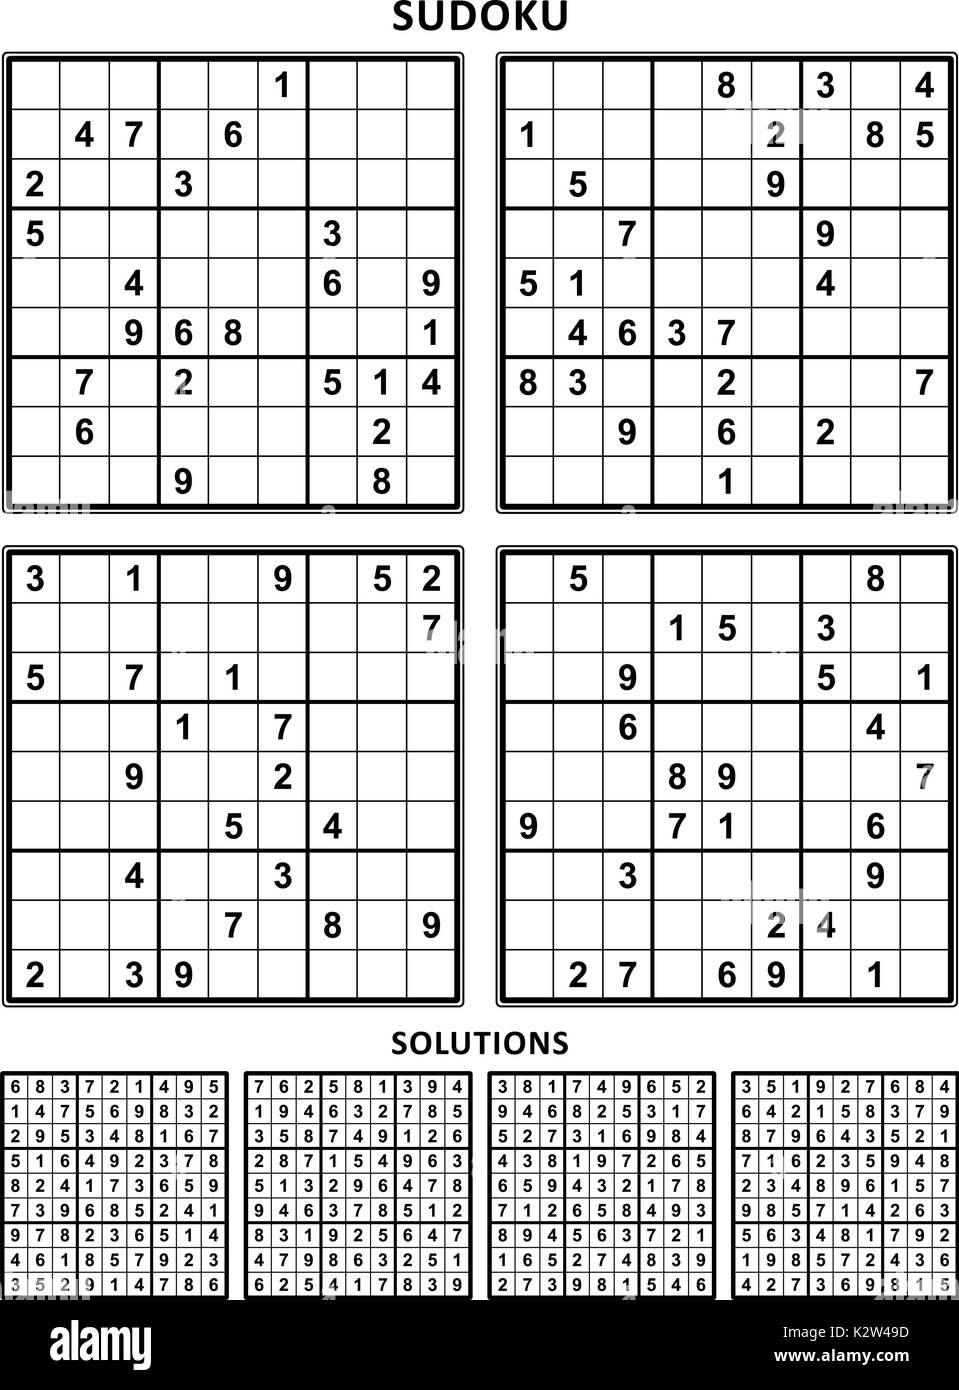 Puzzle di Sudoku non Solo per Anziani Grande Stampa: MEDIO Vol. 1